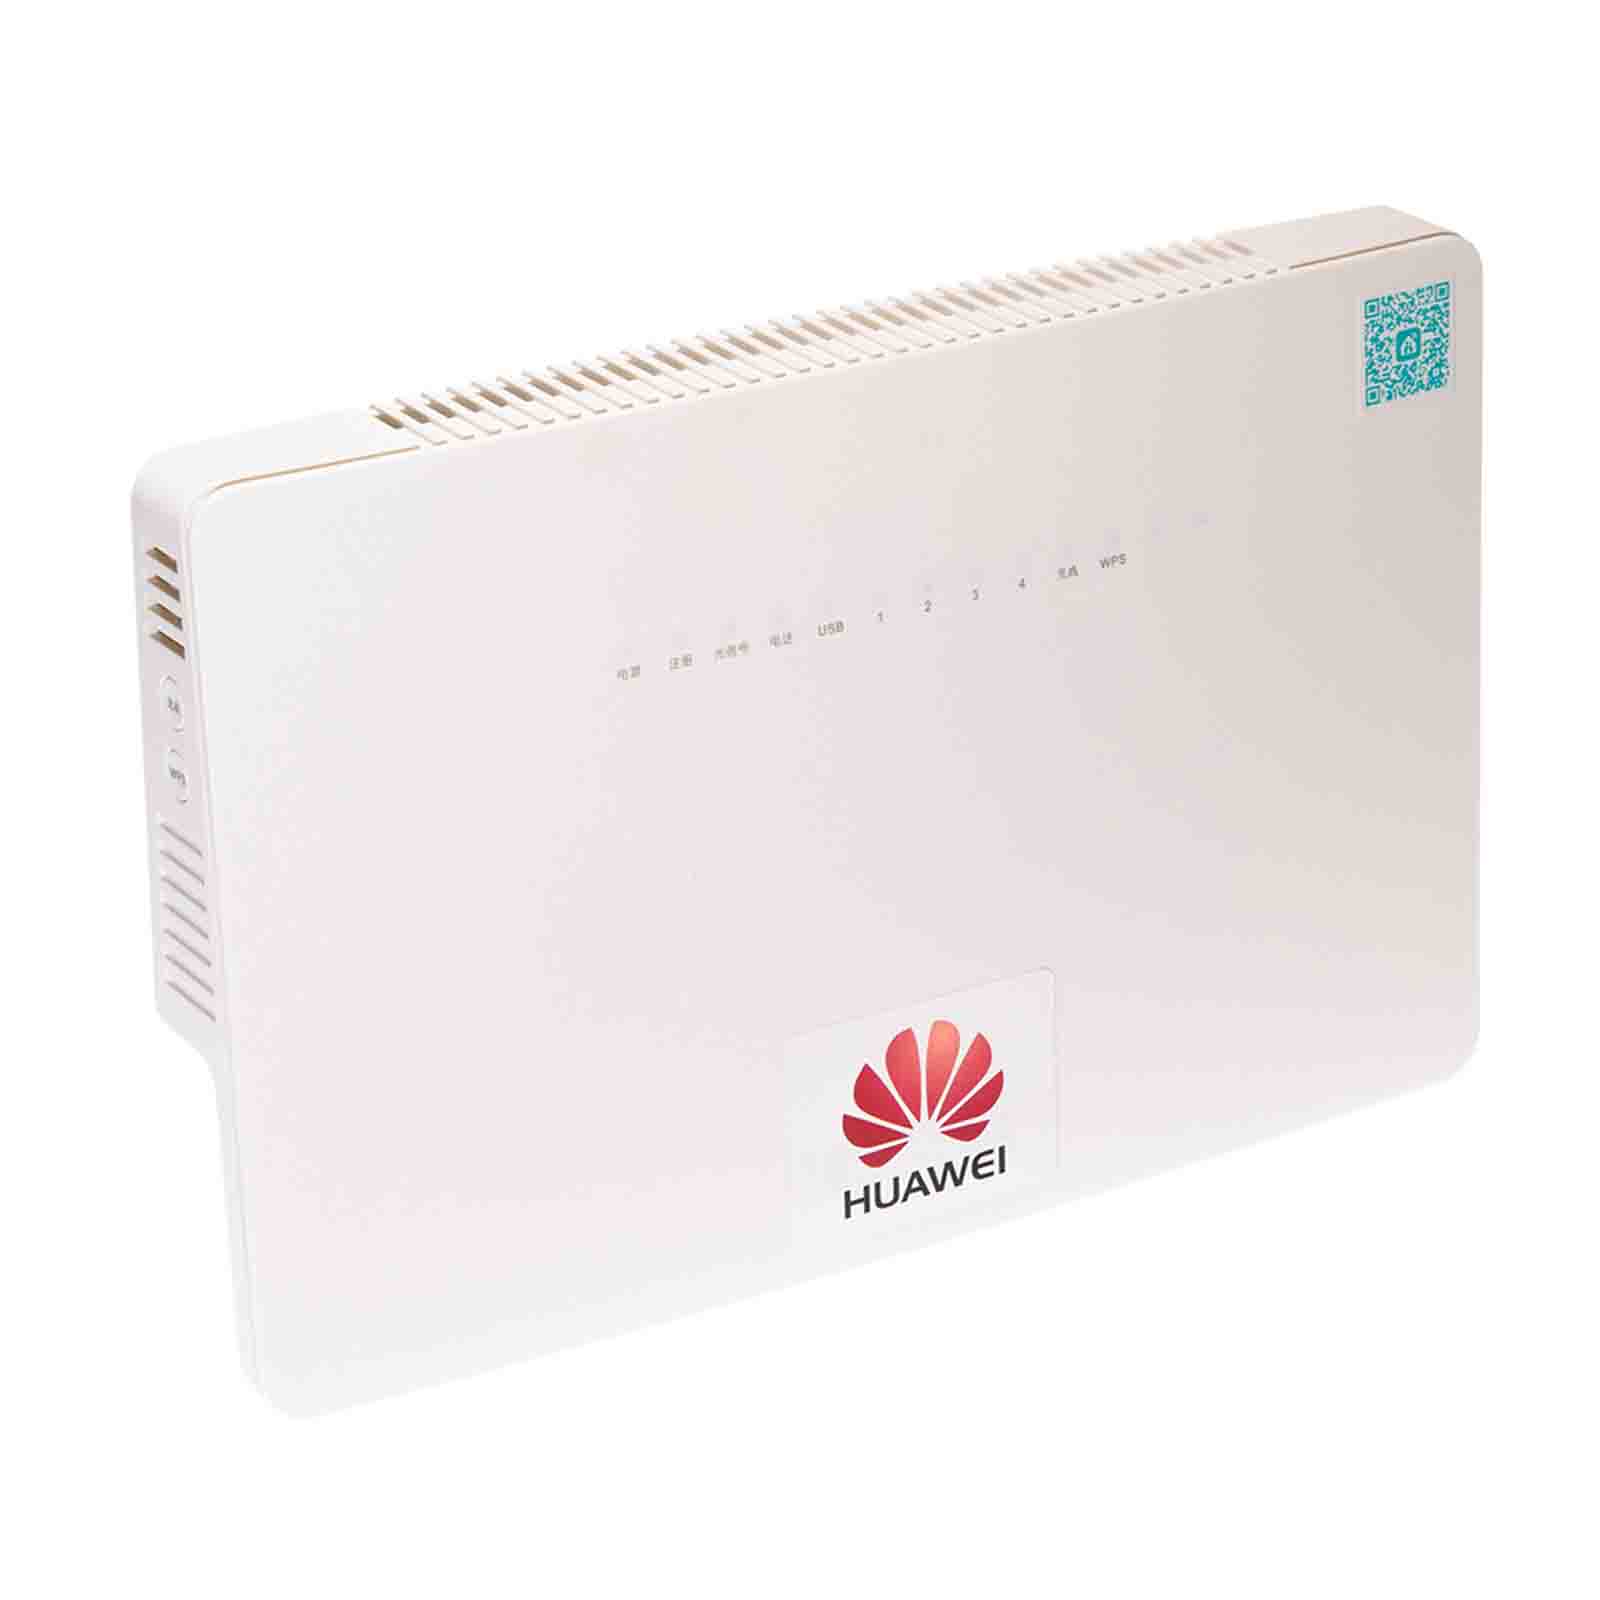 Huawei ONT HS8546V (GPON) 4x GE, 1x POTS, 2x USB, WiFi 5 GHz AC